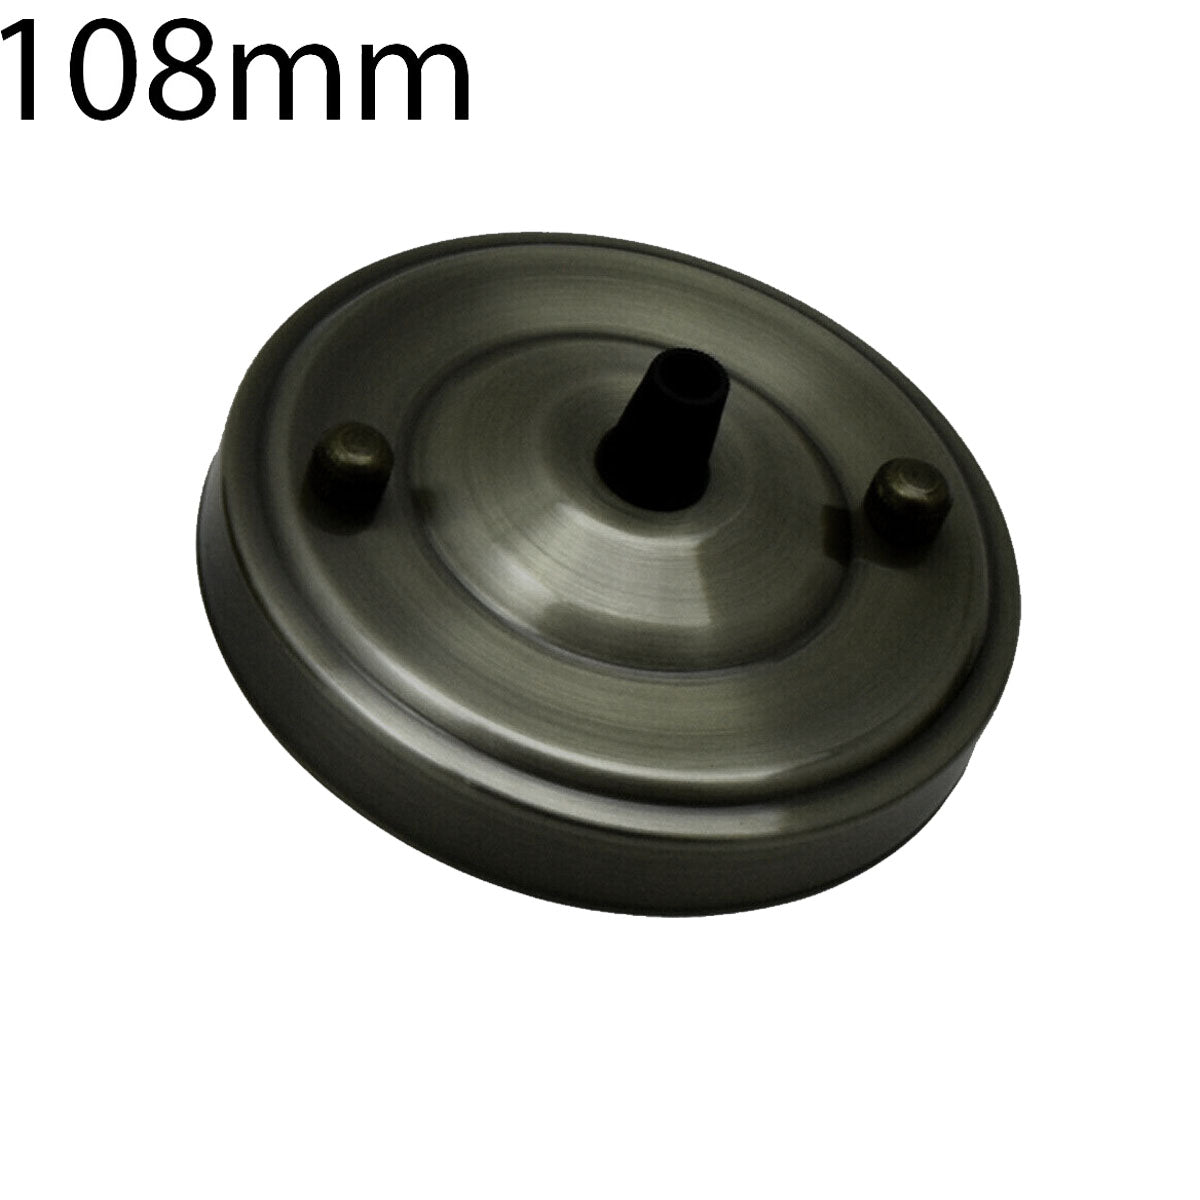 108mm Single Outlet Drop Metal Front Fitting Ceiling Rose~1451 - LEDSone UK Ltd